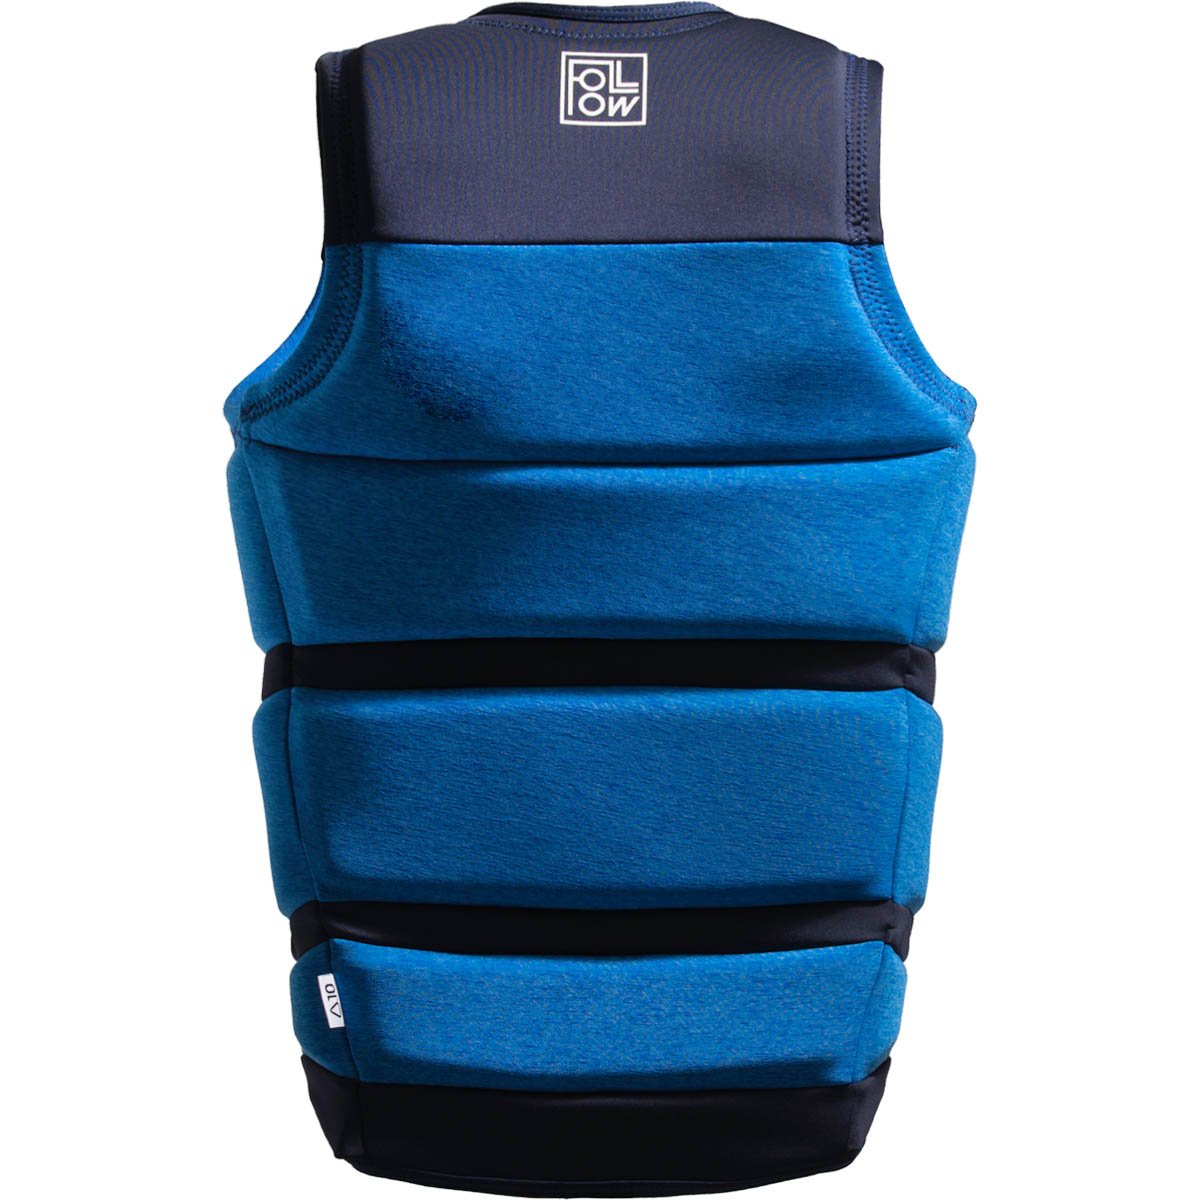 Follow Surf Edition Comp Wake Vest in Blue - BoardCo